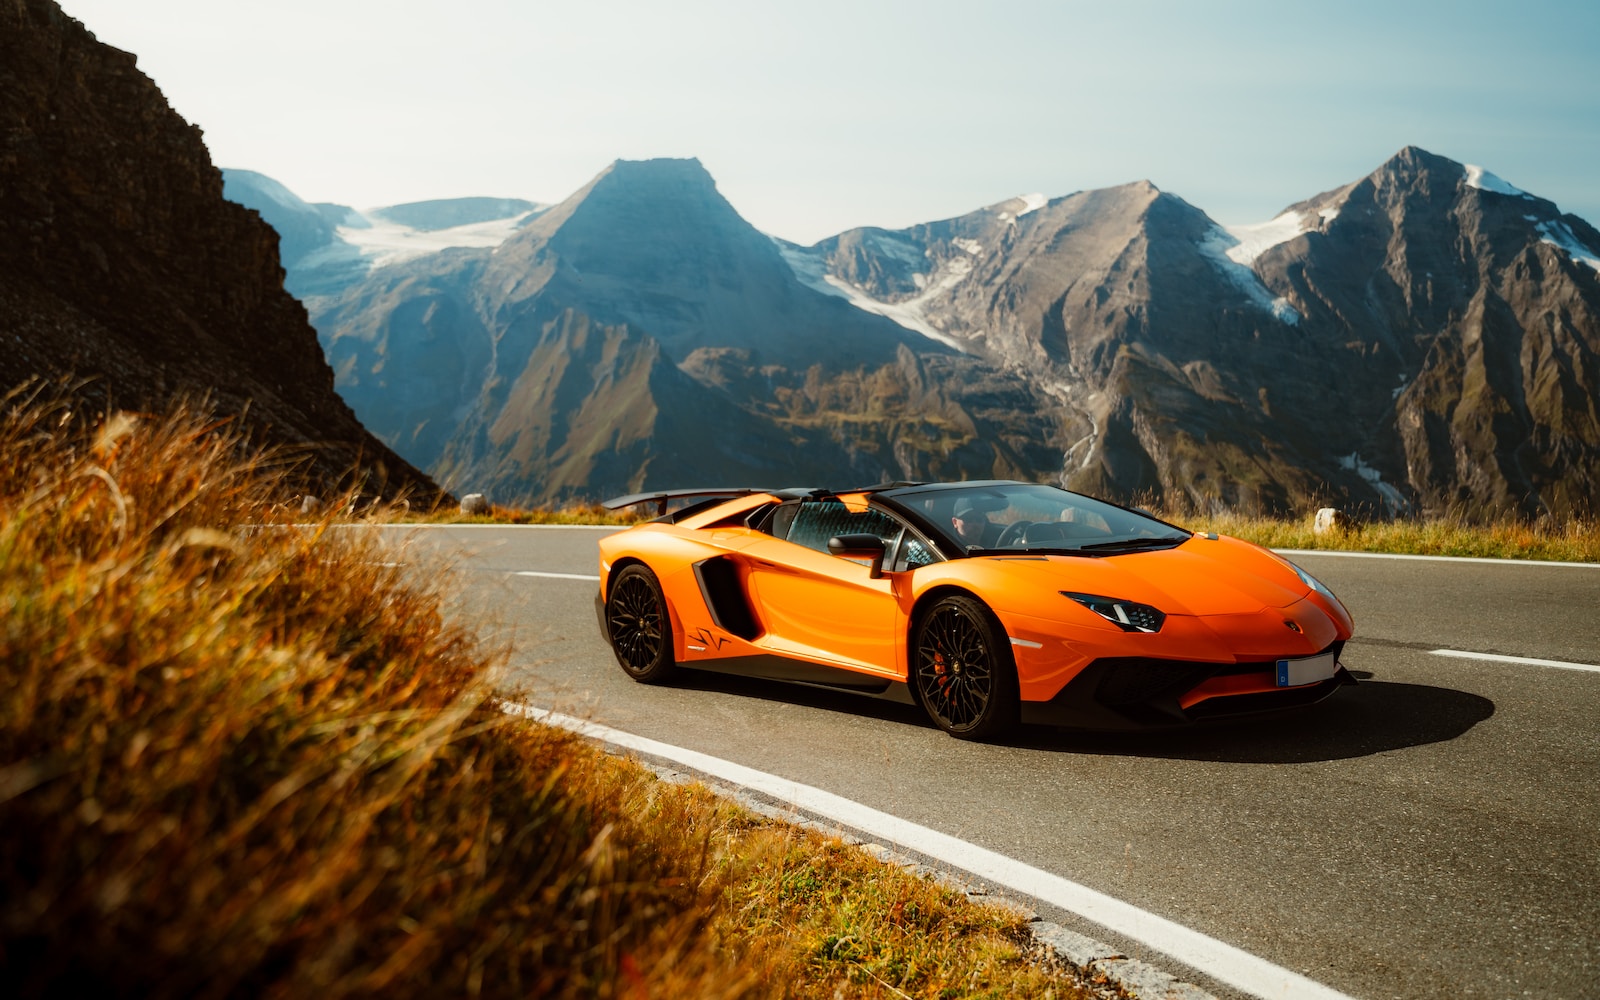 an orange sports car driving down a mountain road